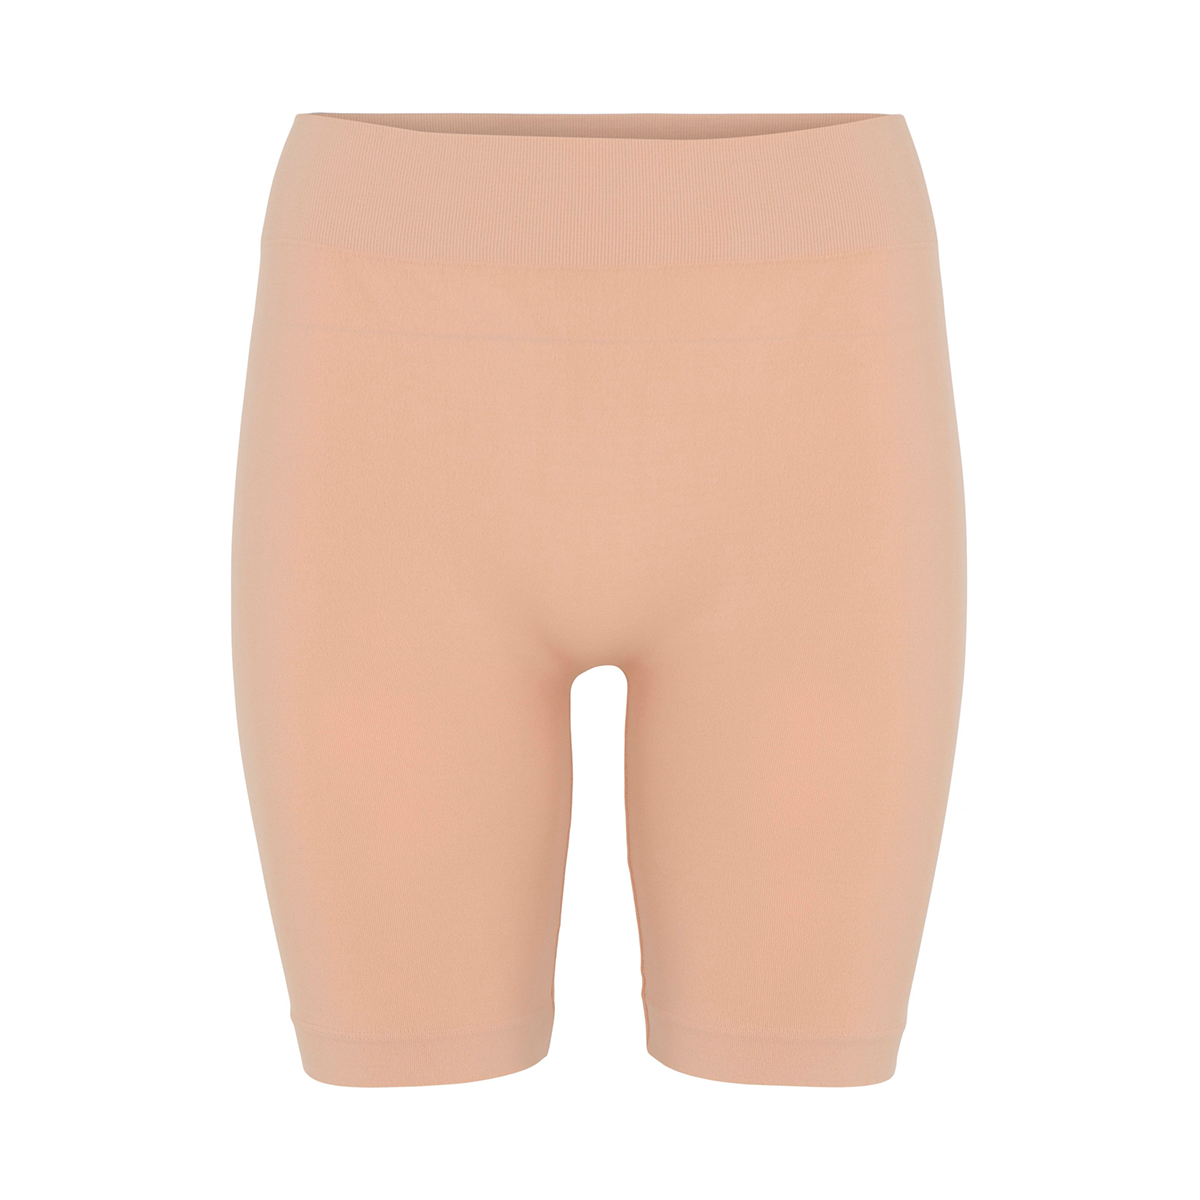 12: Decoy Seamless Shorts, Farve: Beige, Størrelse: XL, Dame